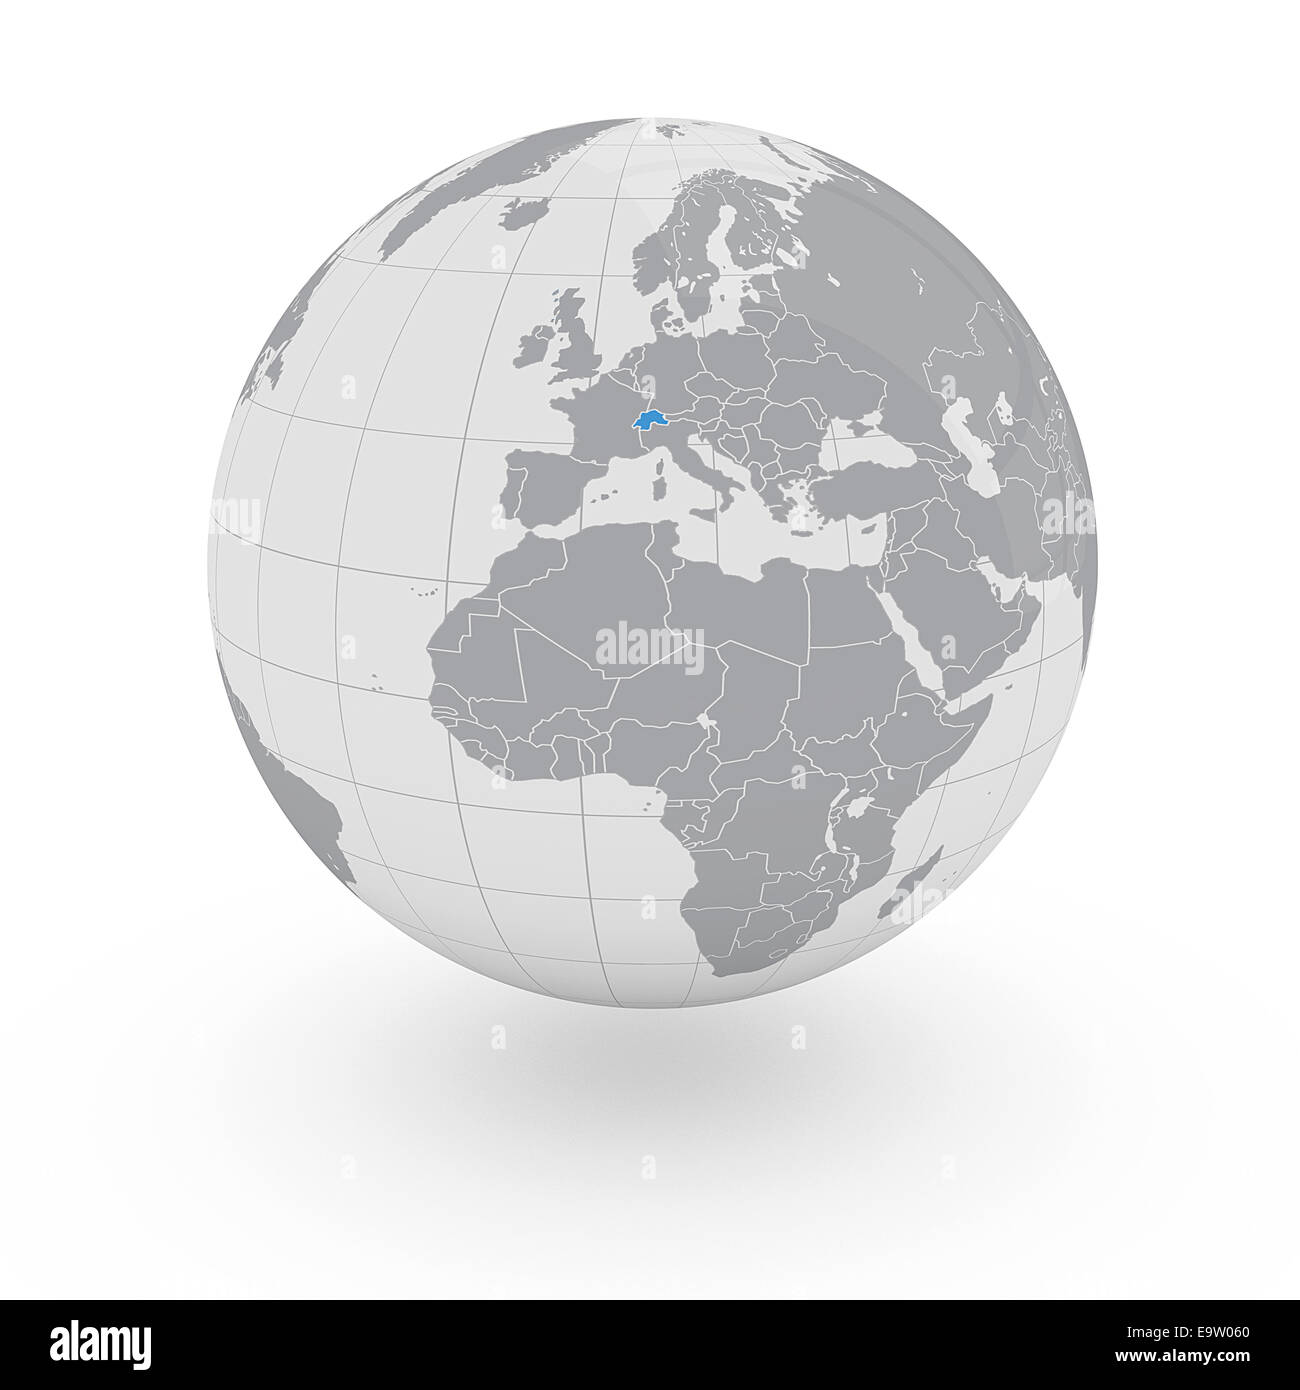 Switzerland on globe isolated on white background Stock Photo - Alamy